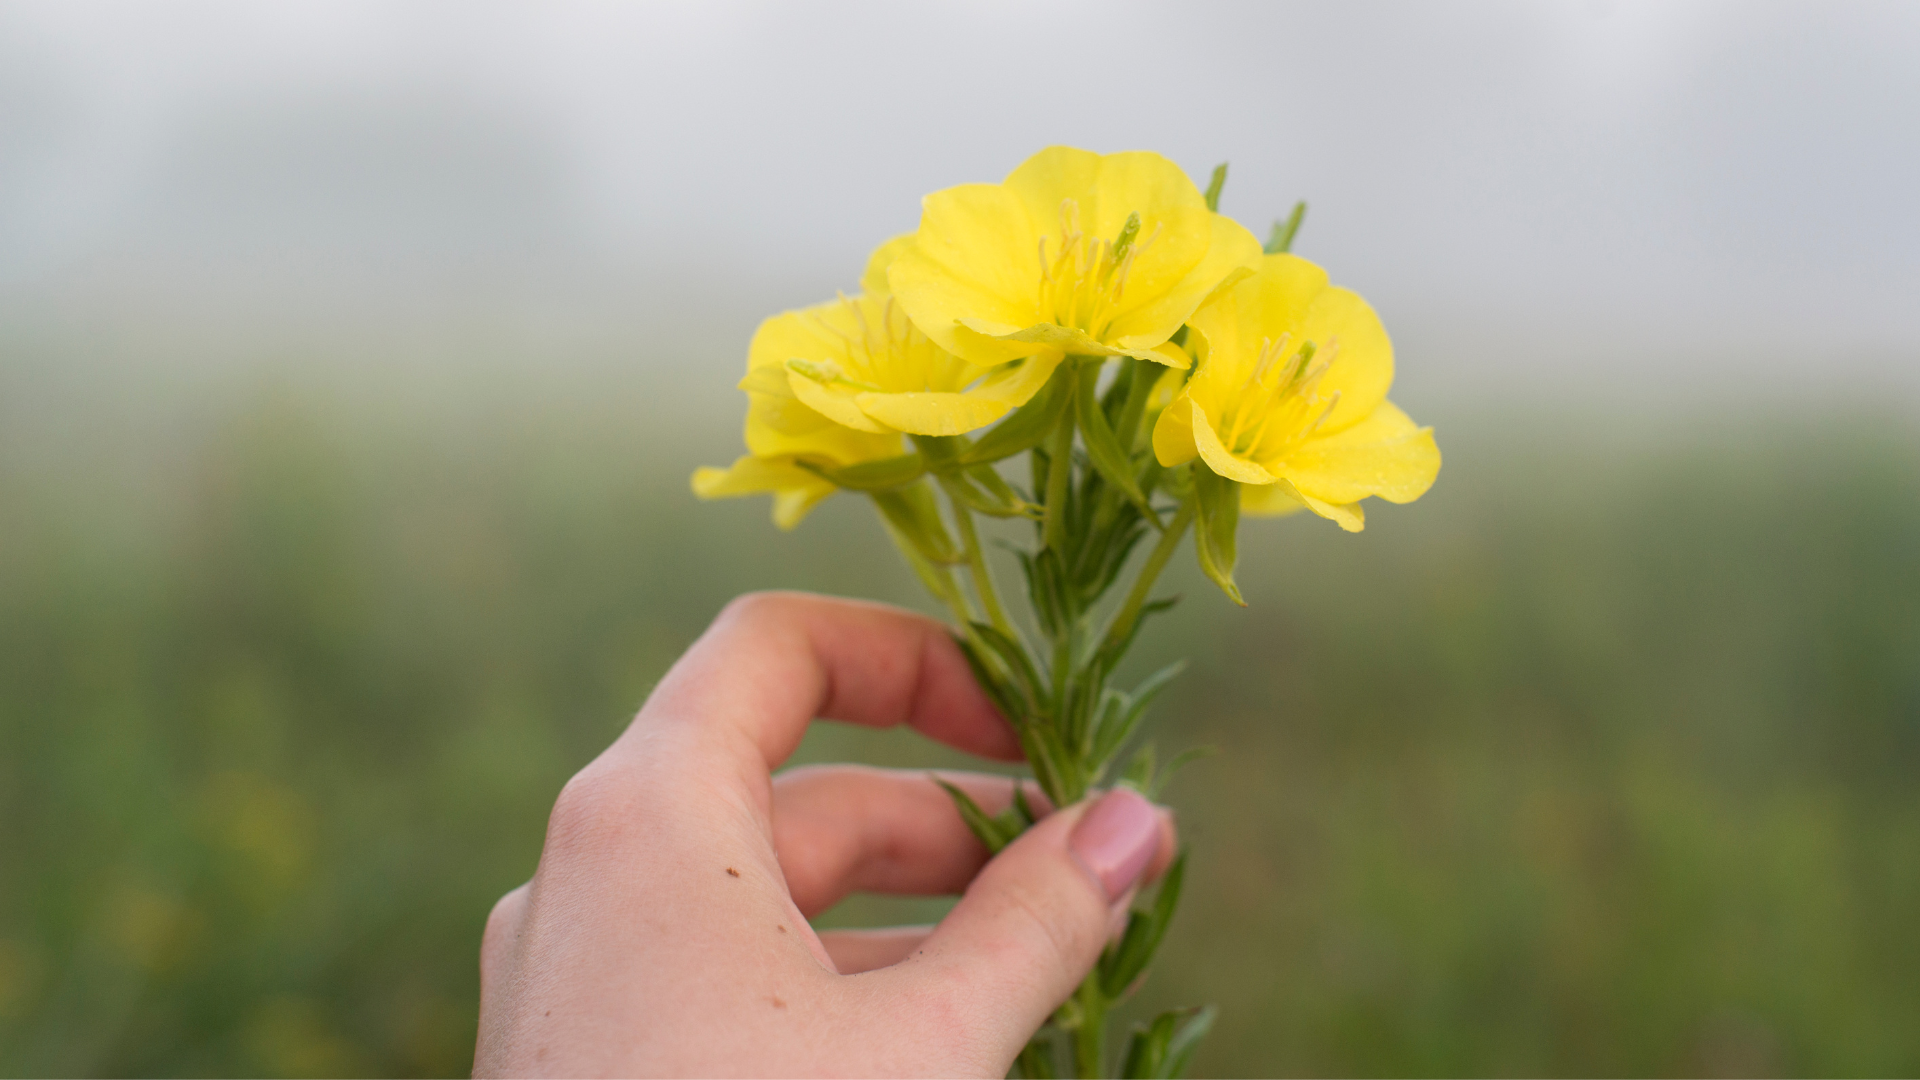 Descifrar Aplastar Yogur Qué significa cuando se regala flores amarillas a un hombre? - Infobae